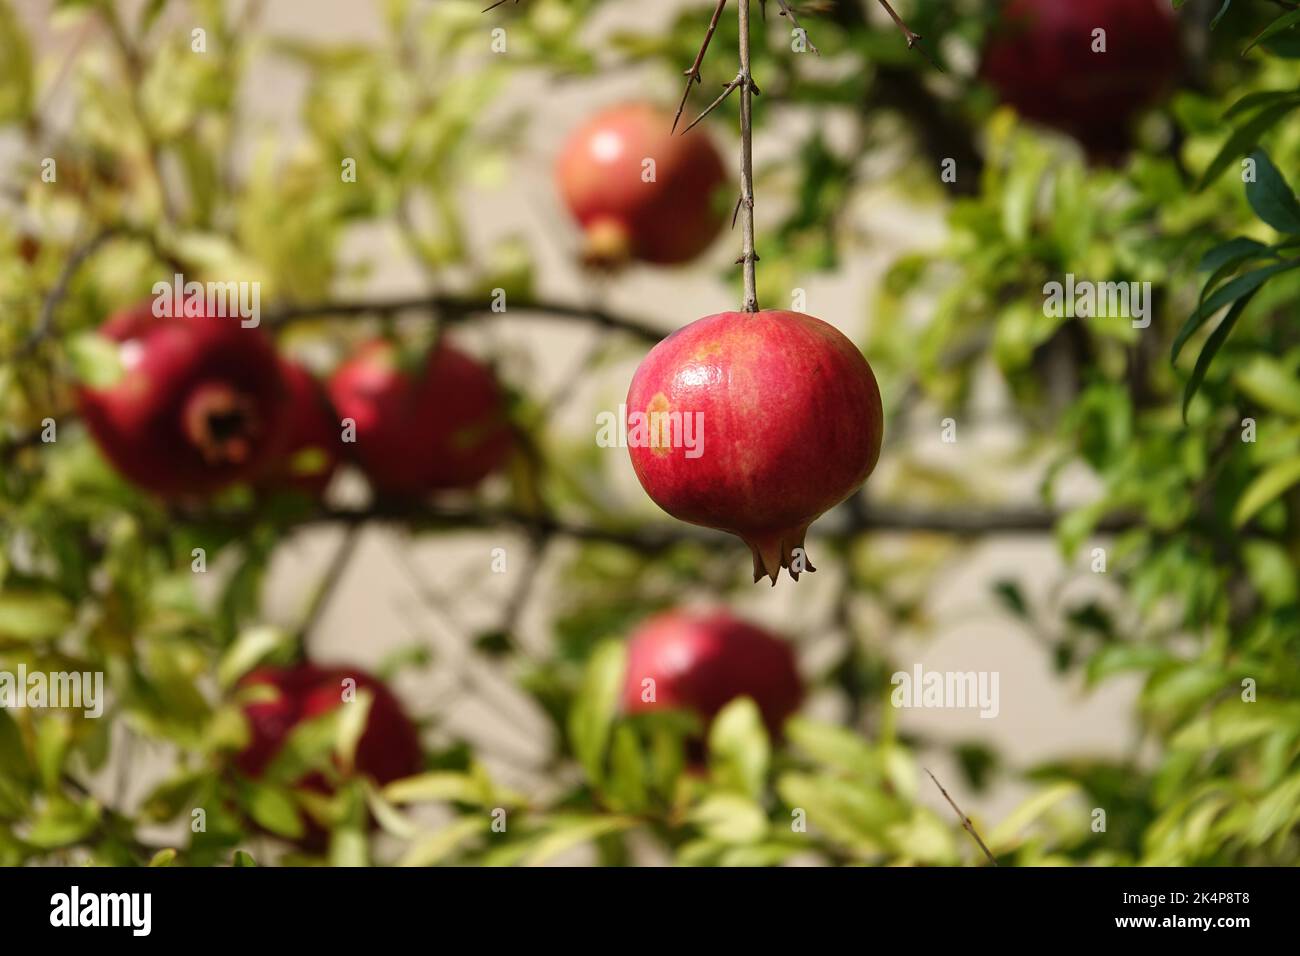 Rote, reife Granatapfelfrucht auf einem Baumzweig im Garten. Farbenfrohes Bild mit Platz für Text, Nahaufnahme. Rosh-haShana - Israelisches Neujahrssymbol Stockfoto